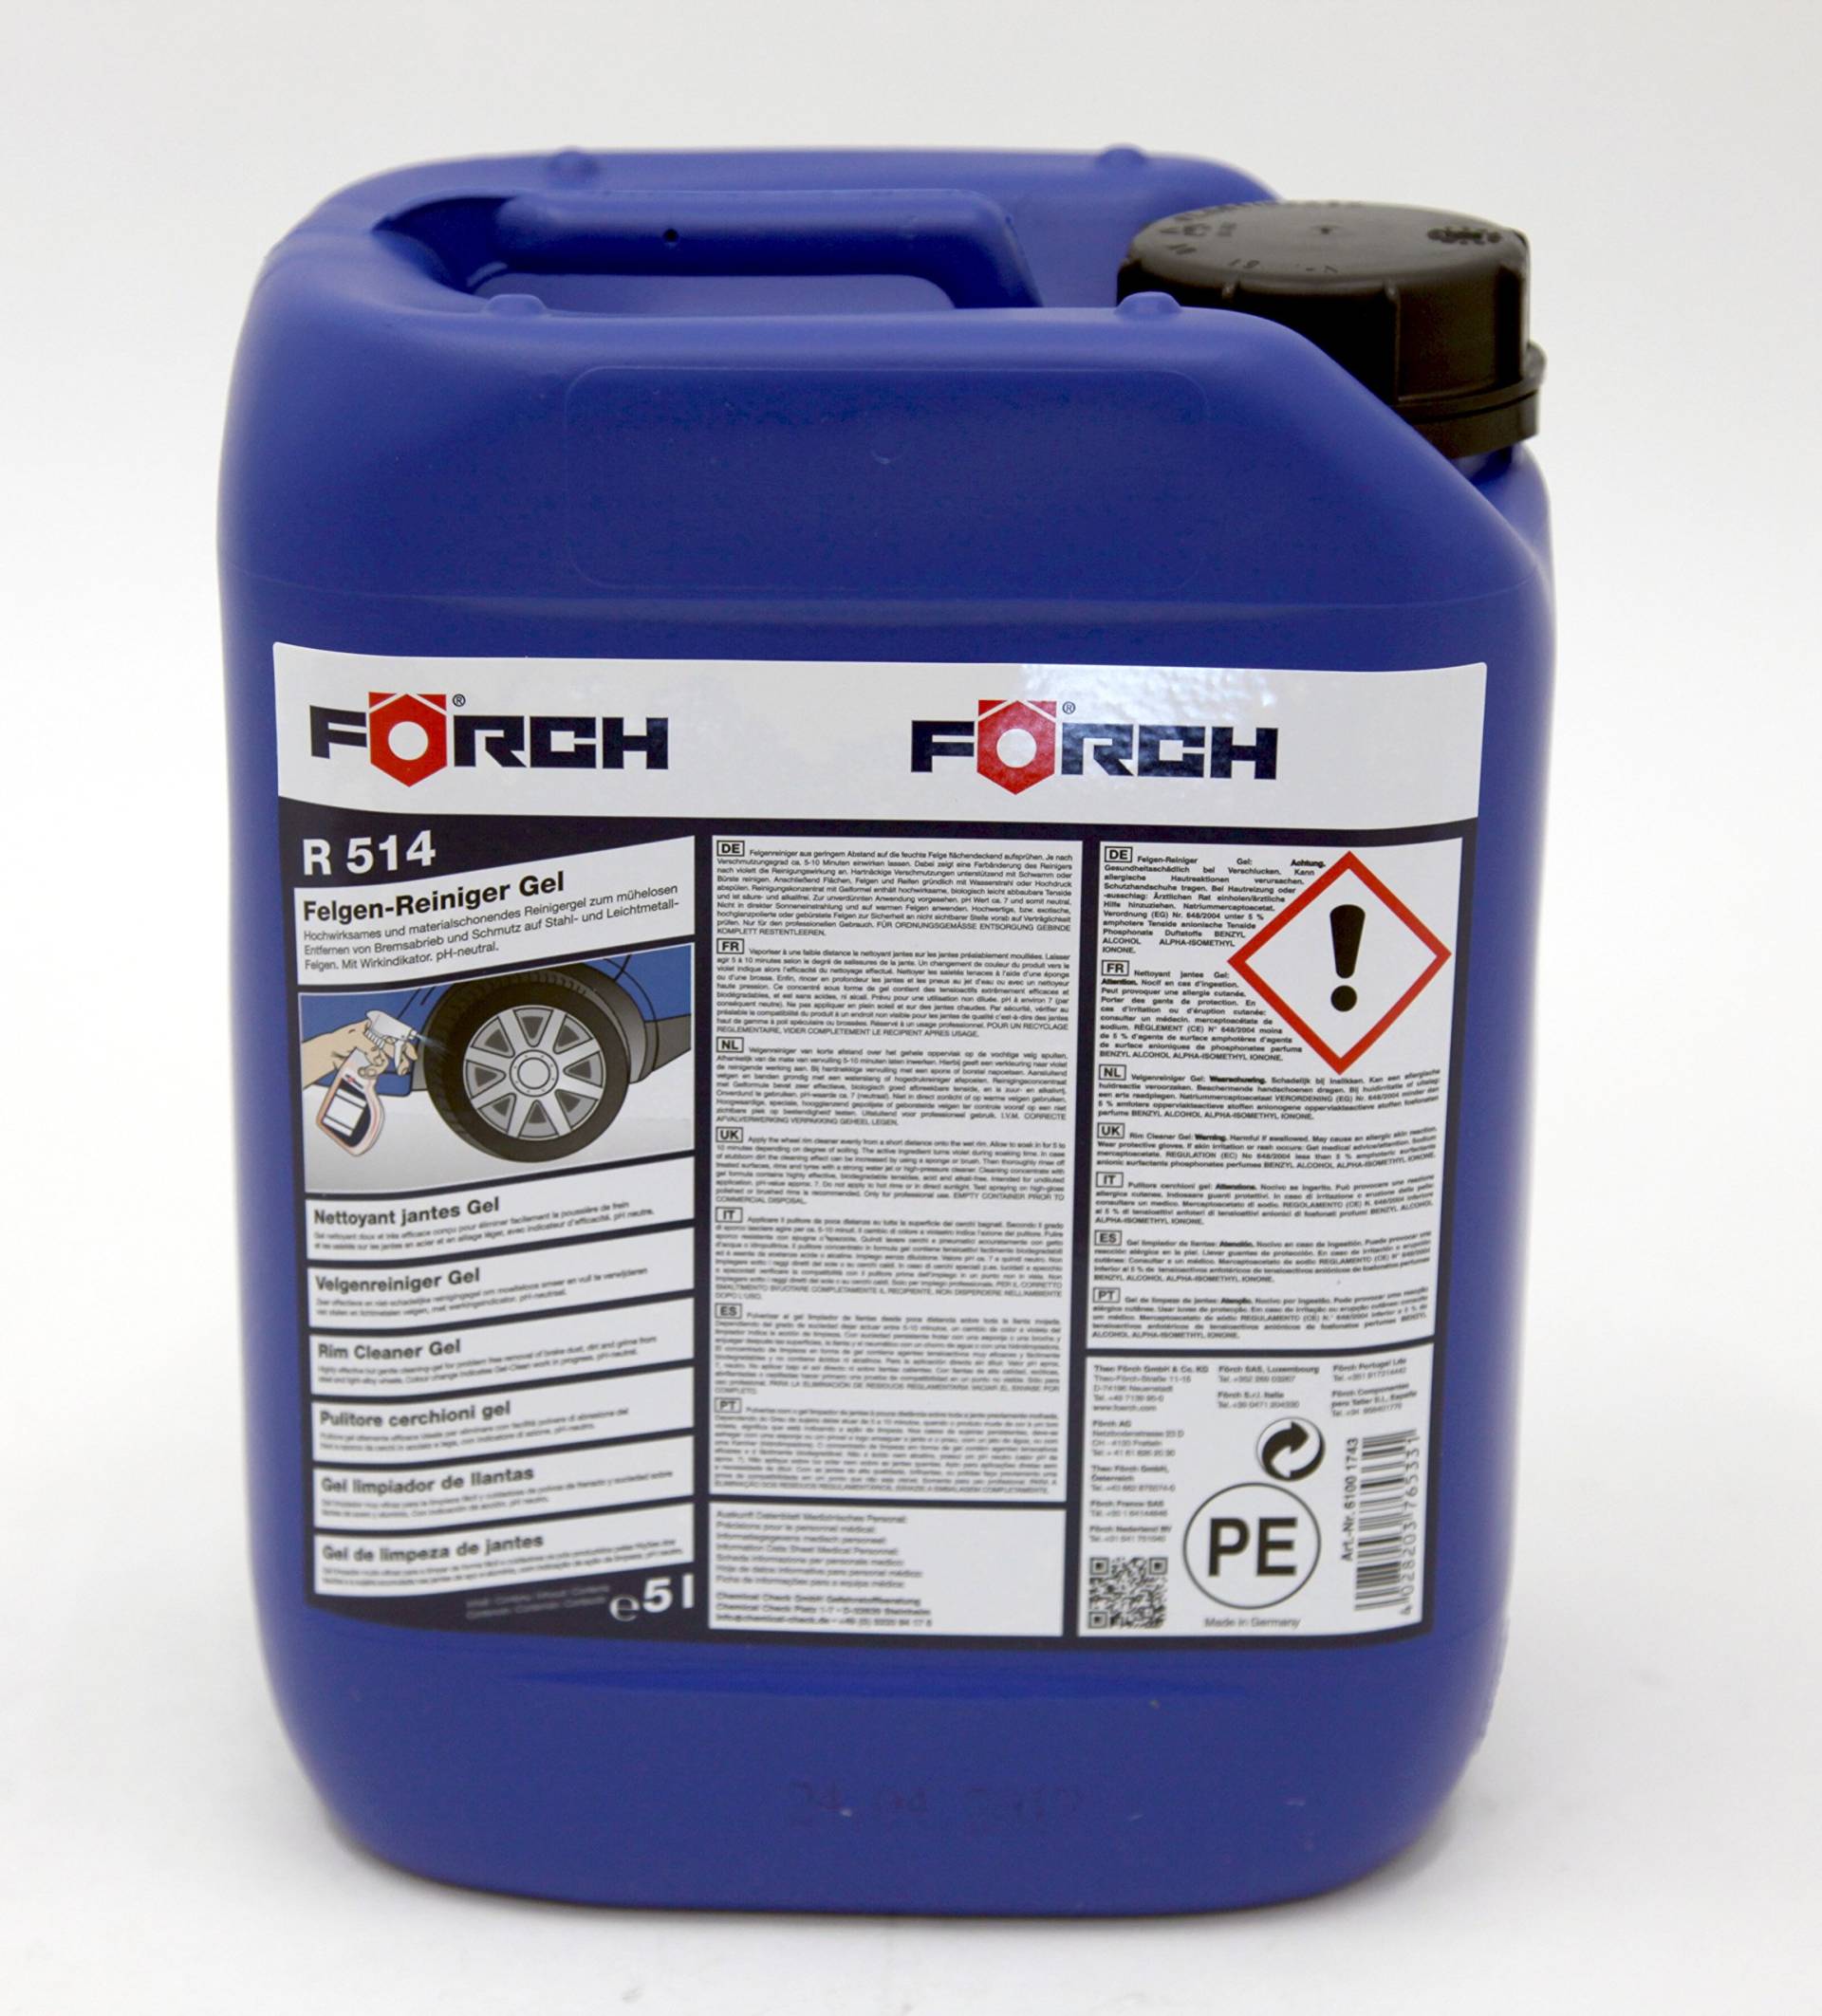 FÖRCH Felgen-Reiniger Gel R514 Felgenreiniger 5 Liter Kanister pH-neutral von FORCH